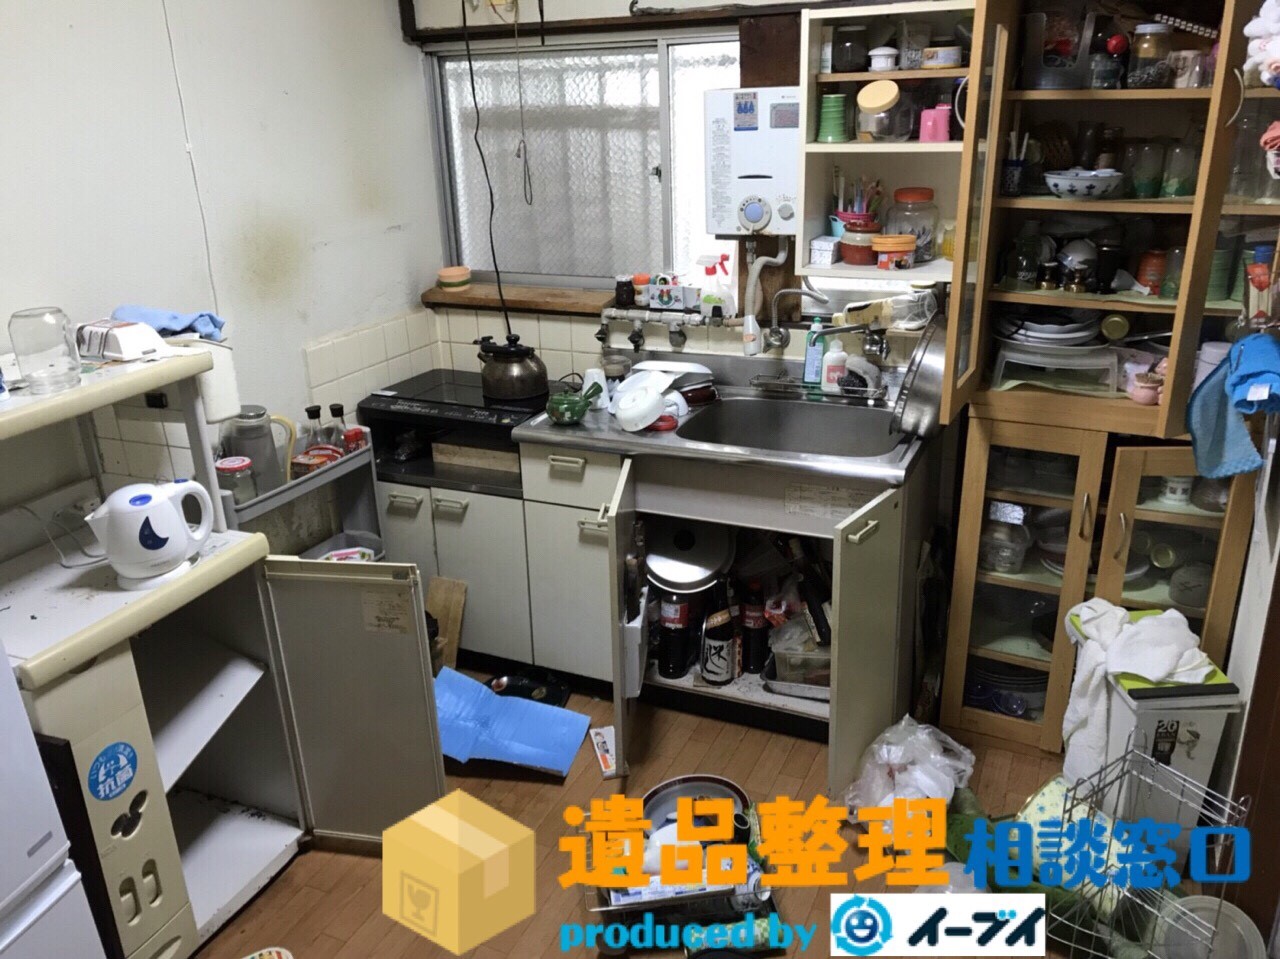 兵庫県西宮市で遺品整理の作業で台所や食器棚の片付けをしました。のアイキャッチ